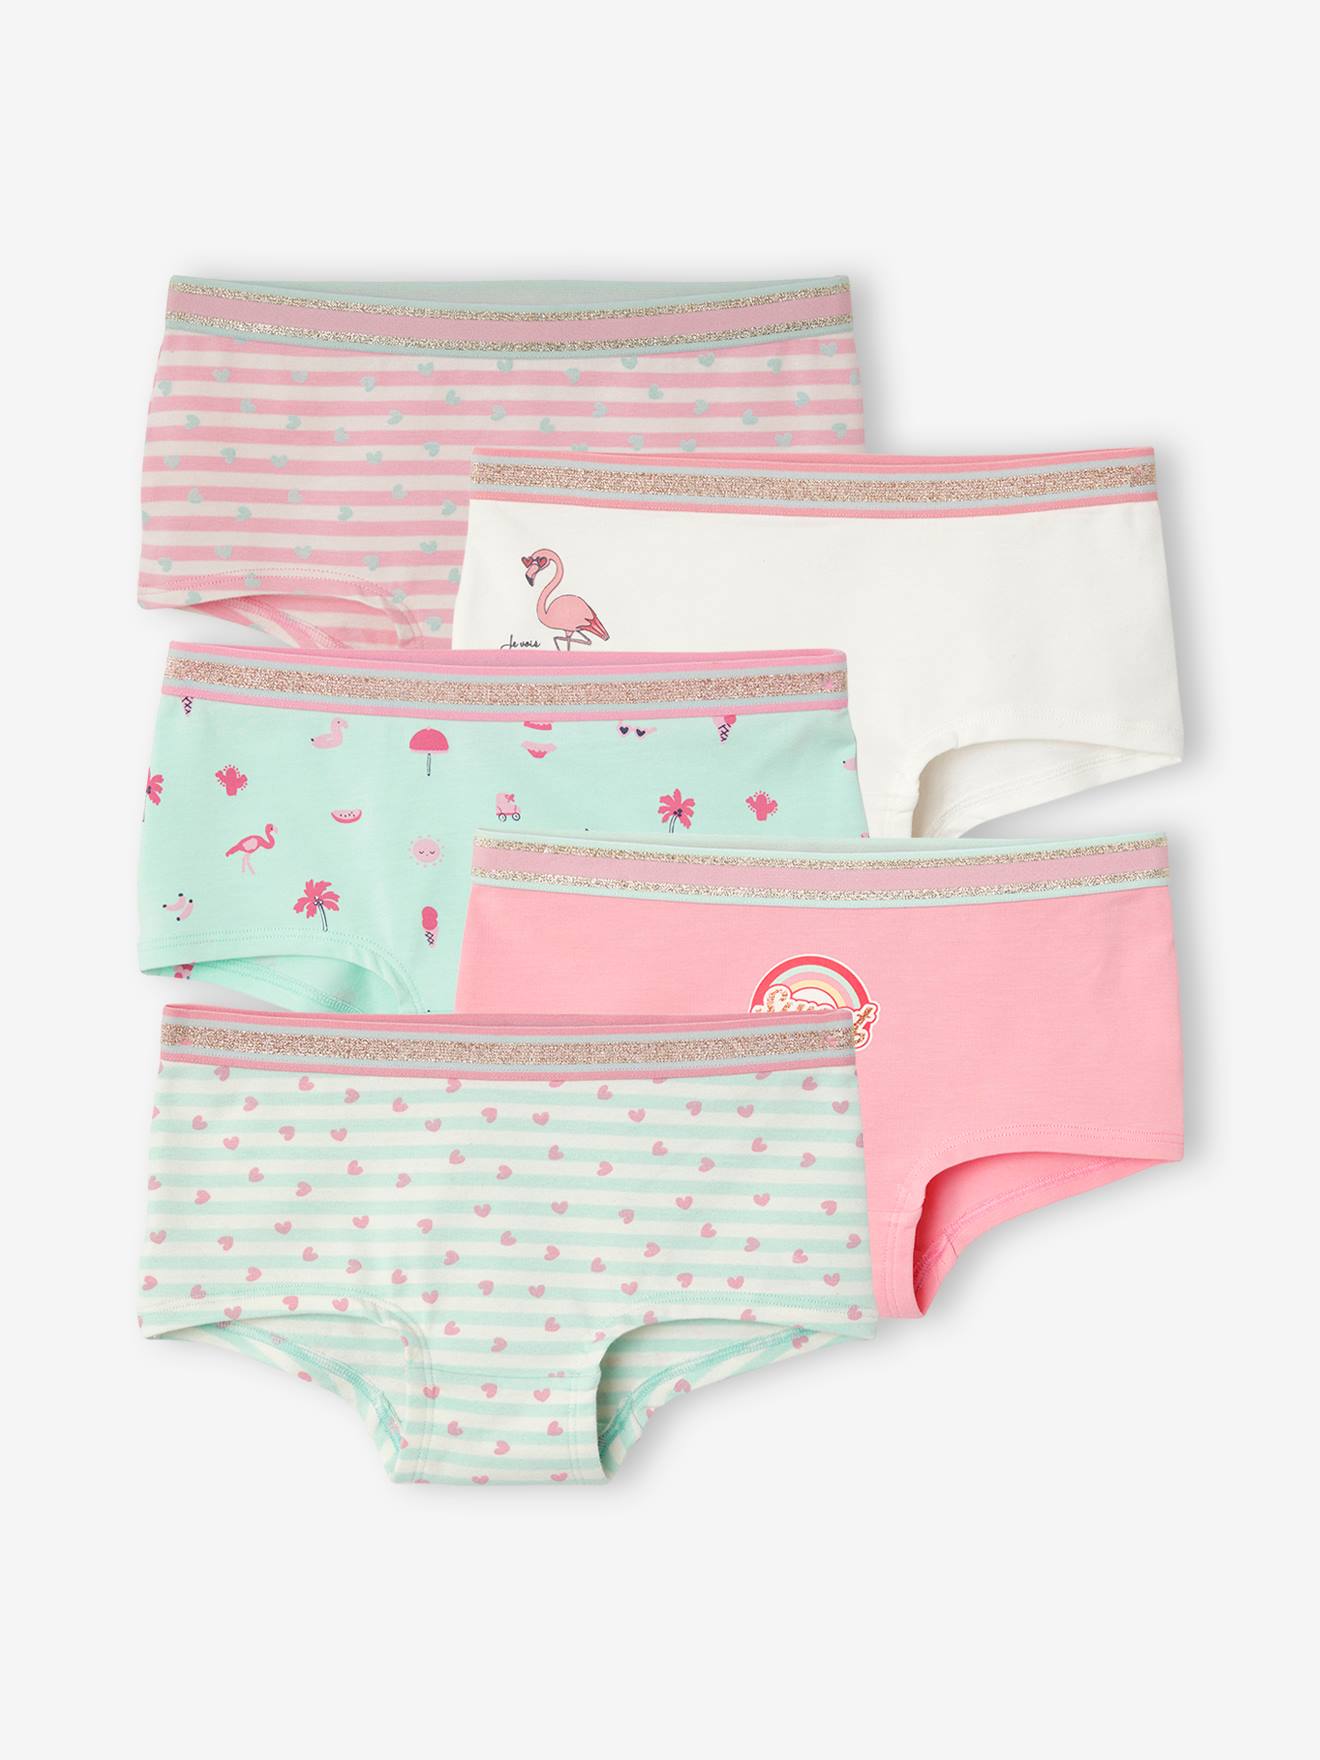 Strumpfhosenset Kinder Mädchen Unterwäsche & Socken Strumpfhosen 